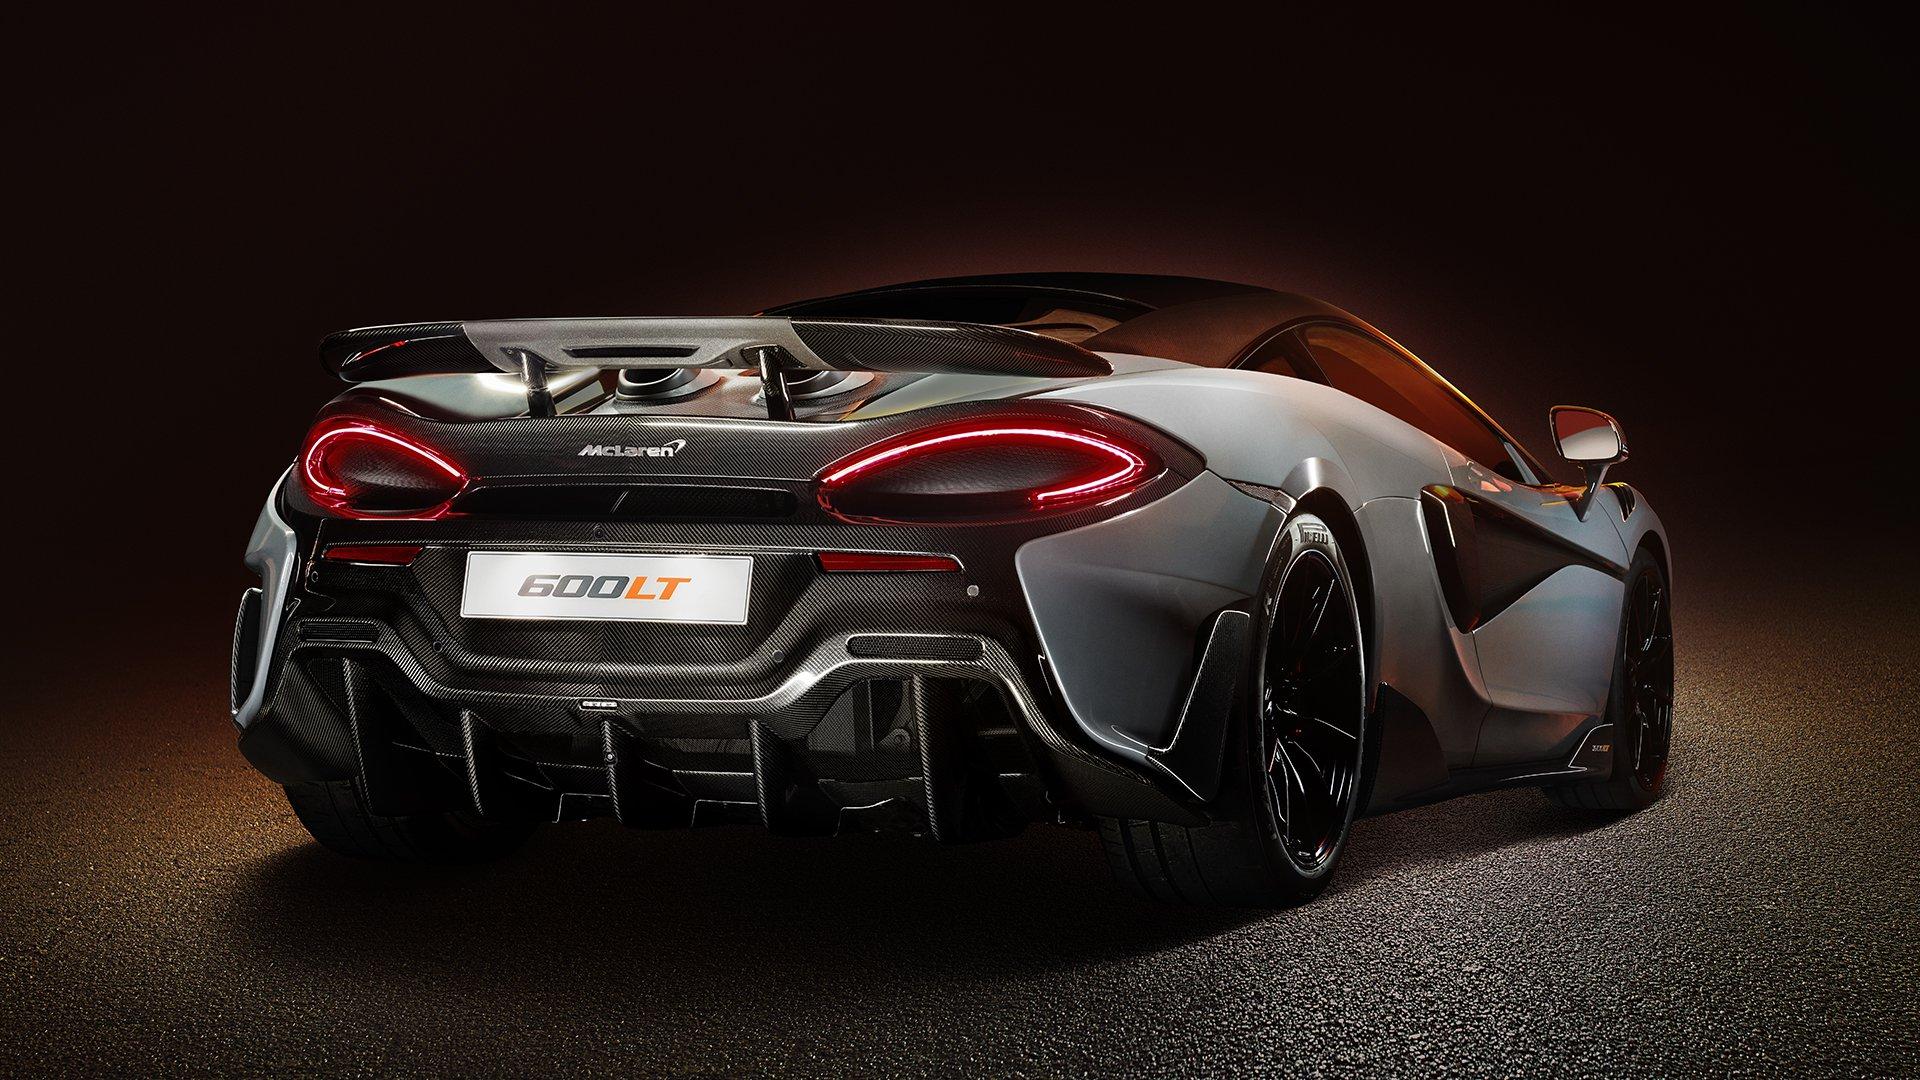 The new McLaren 600LT edge is calling